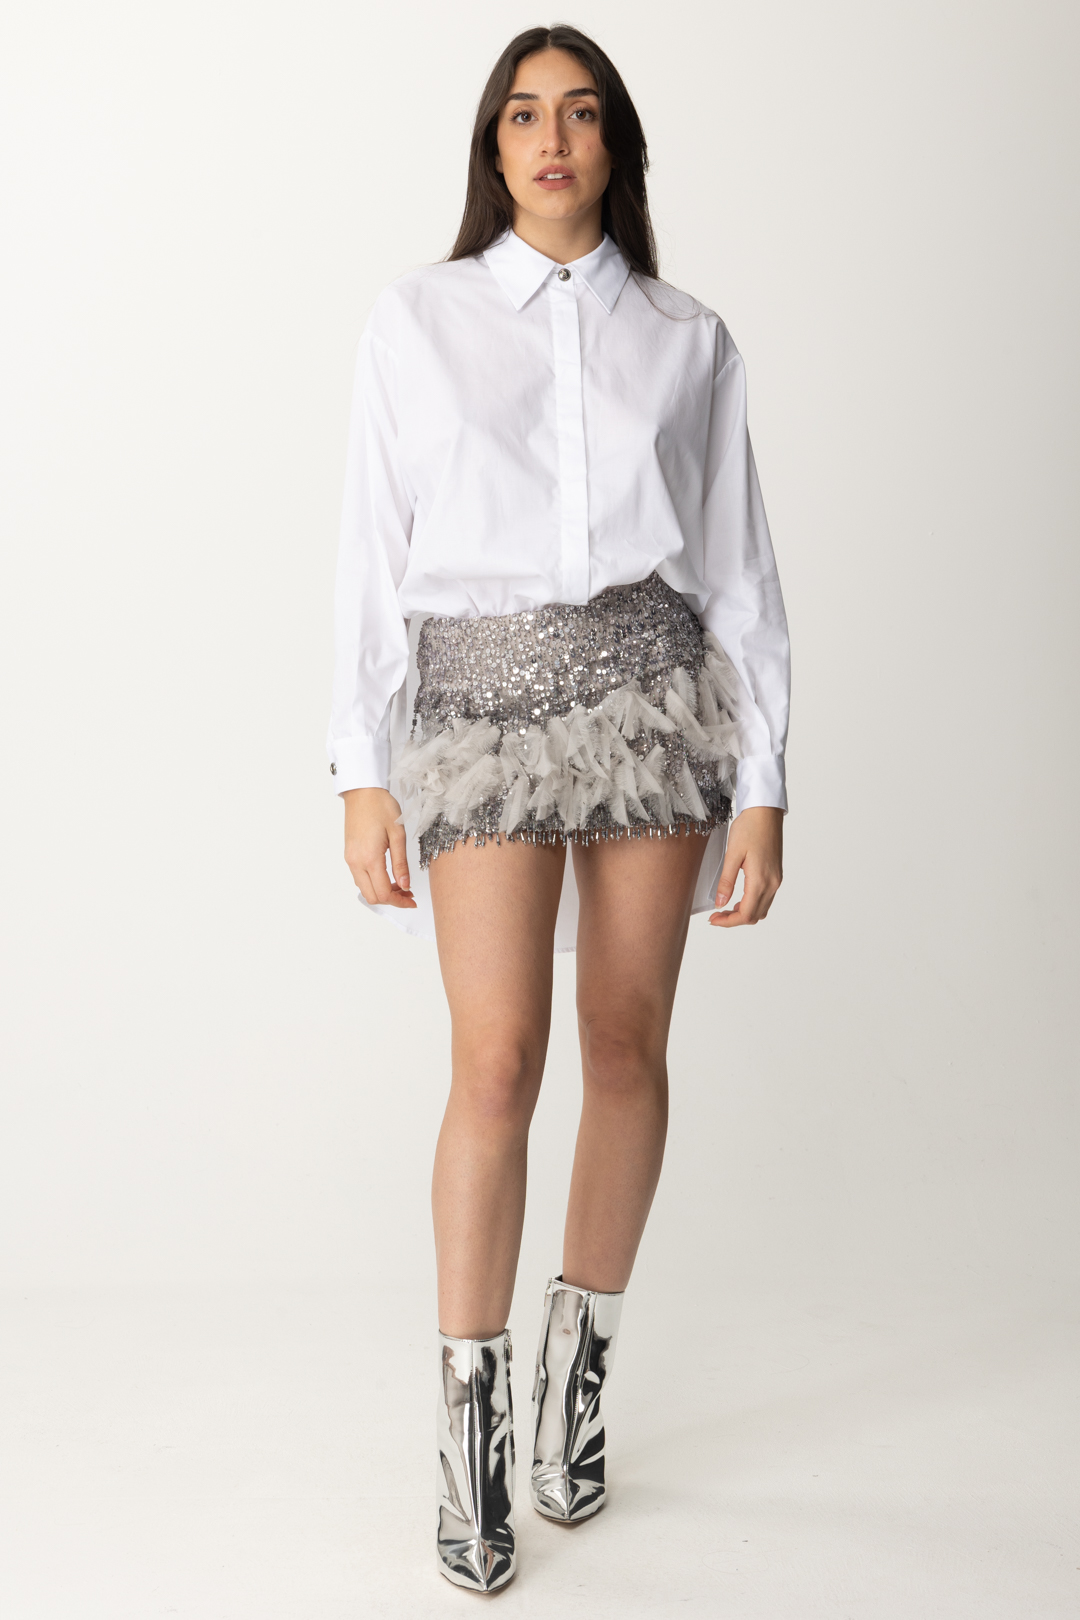 Aperçu: Elisabetta Franchi Mini-robe avec chemise et jupe brodées Bianco/Perla